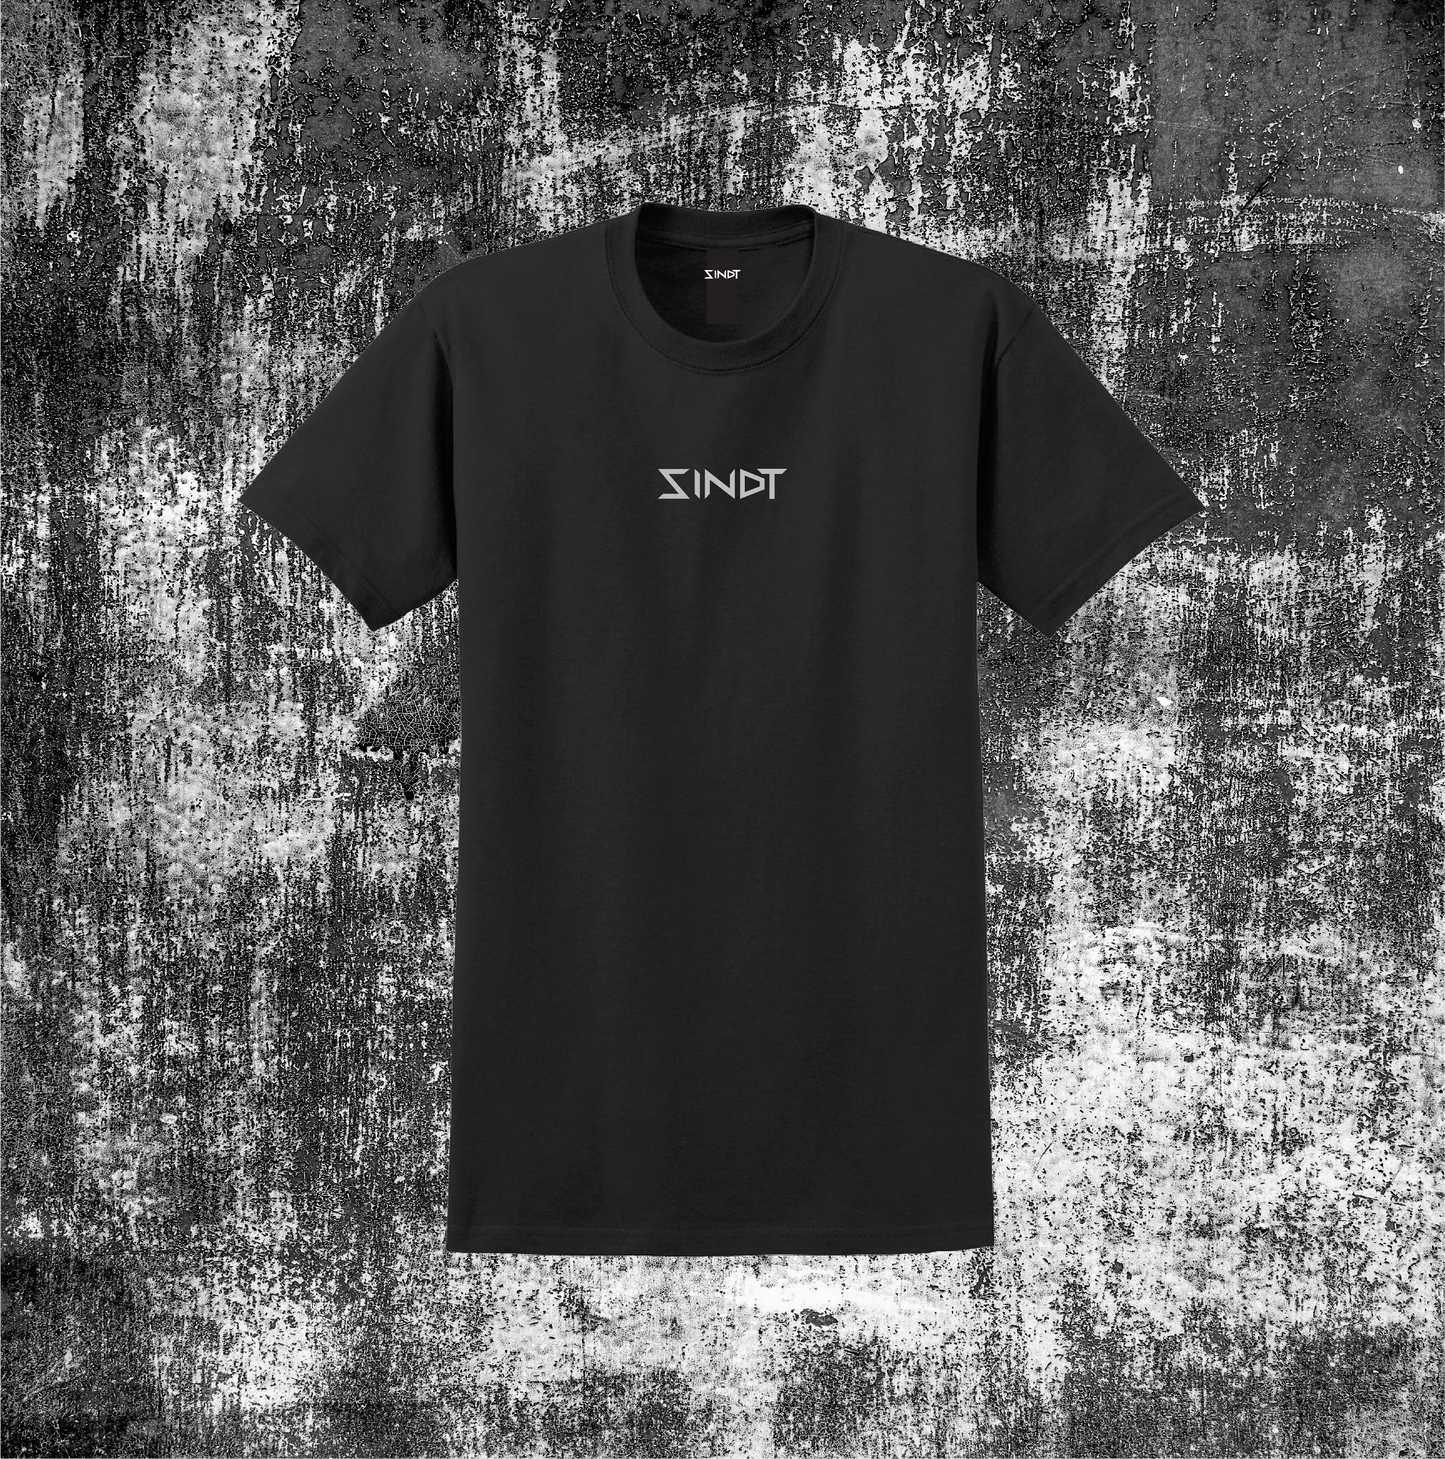 Sinner or Saint T-shirt